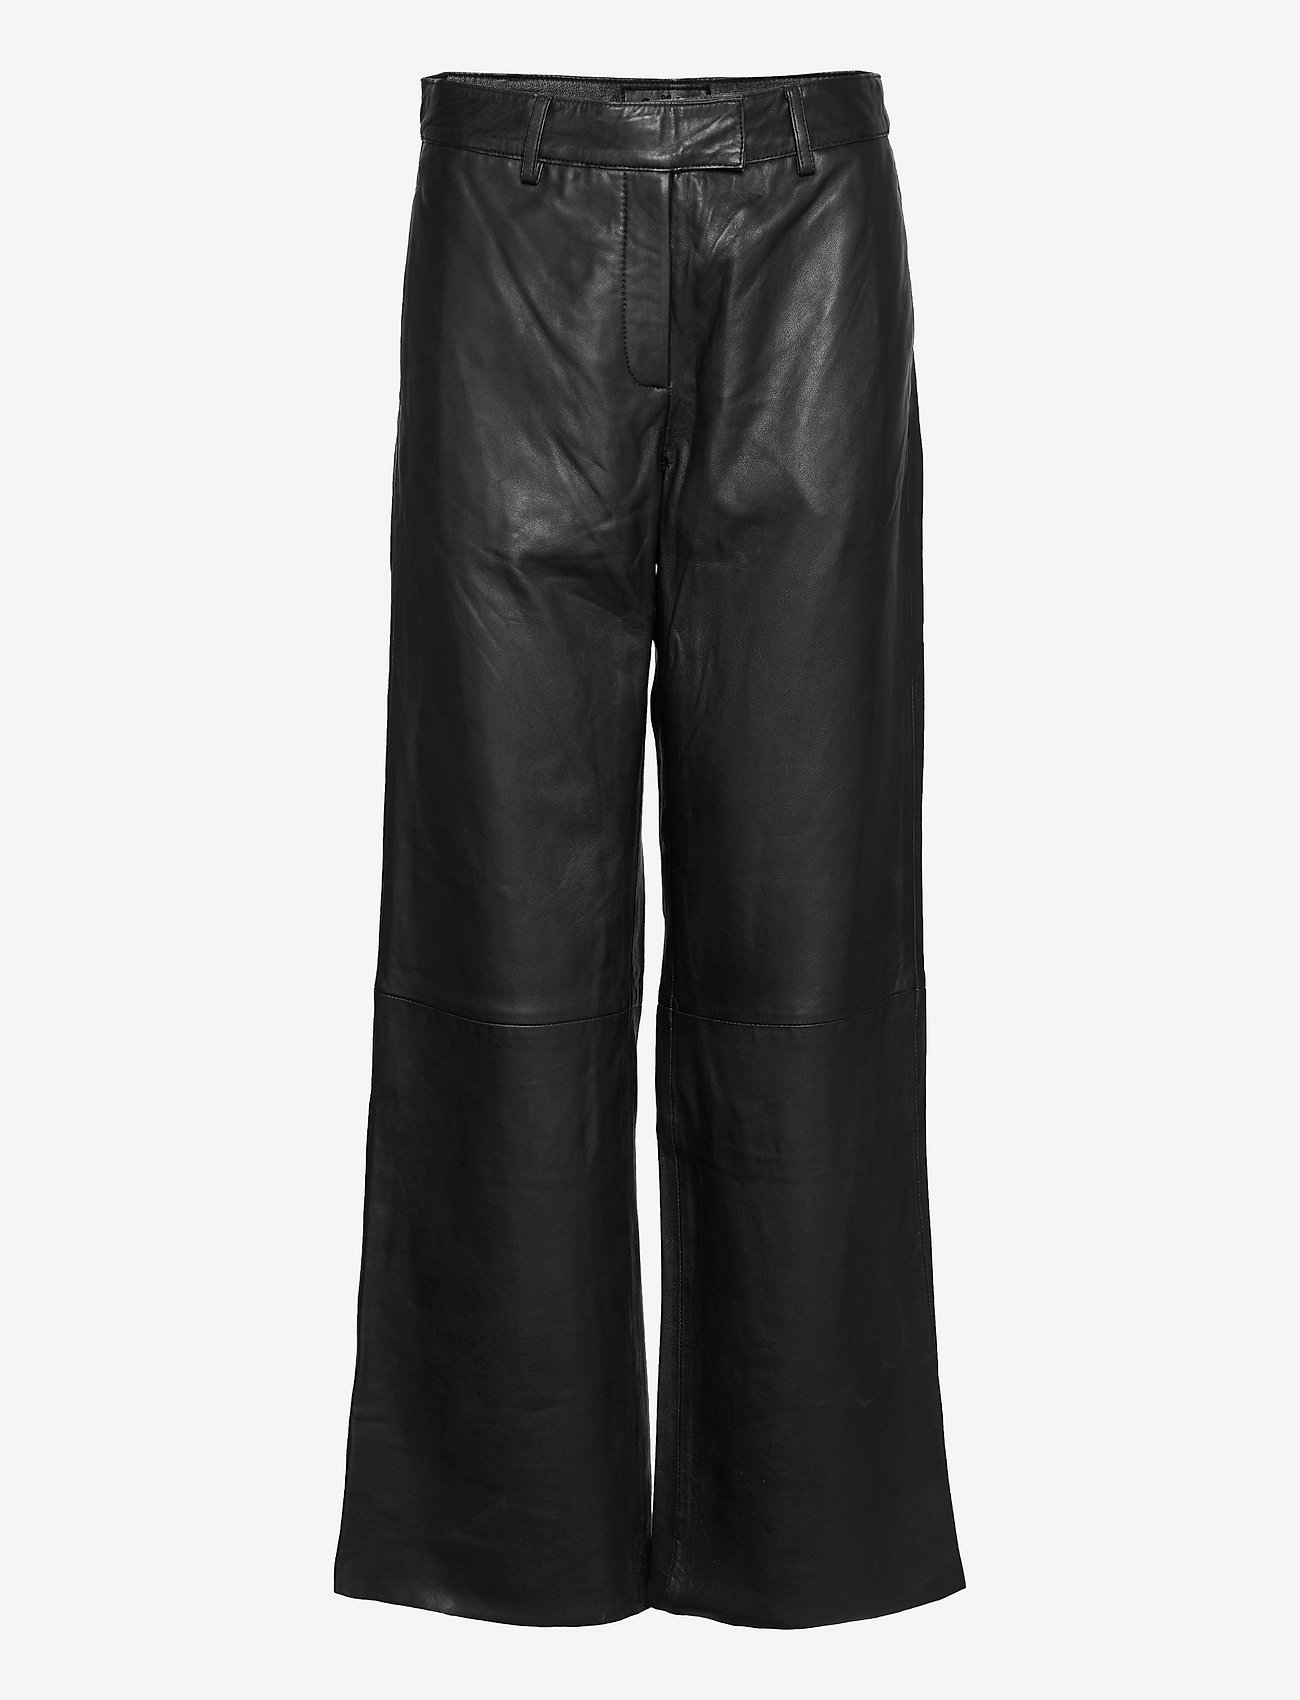 DEPECHE - Pants - odzież imprezowa w cenach outletowych - 099 black (nero) - 0